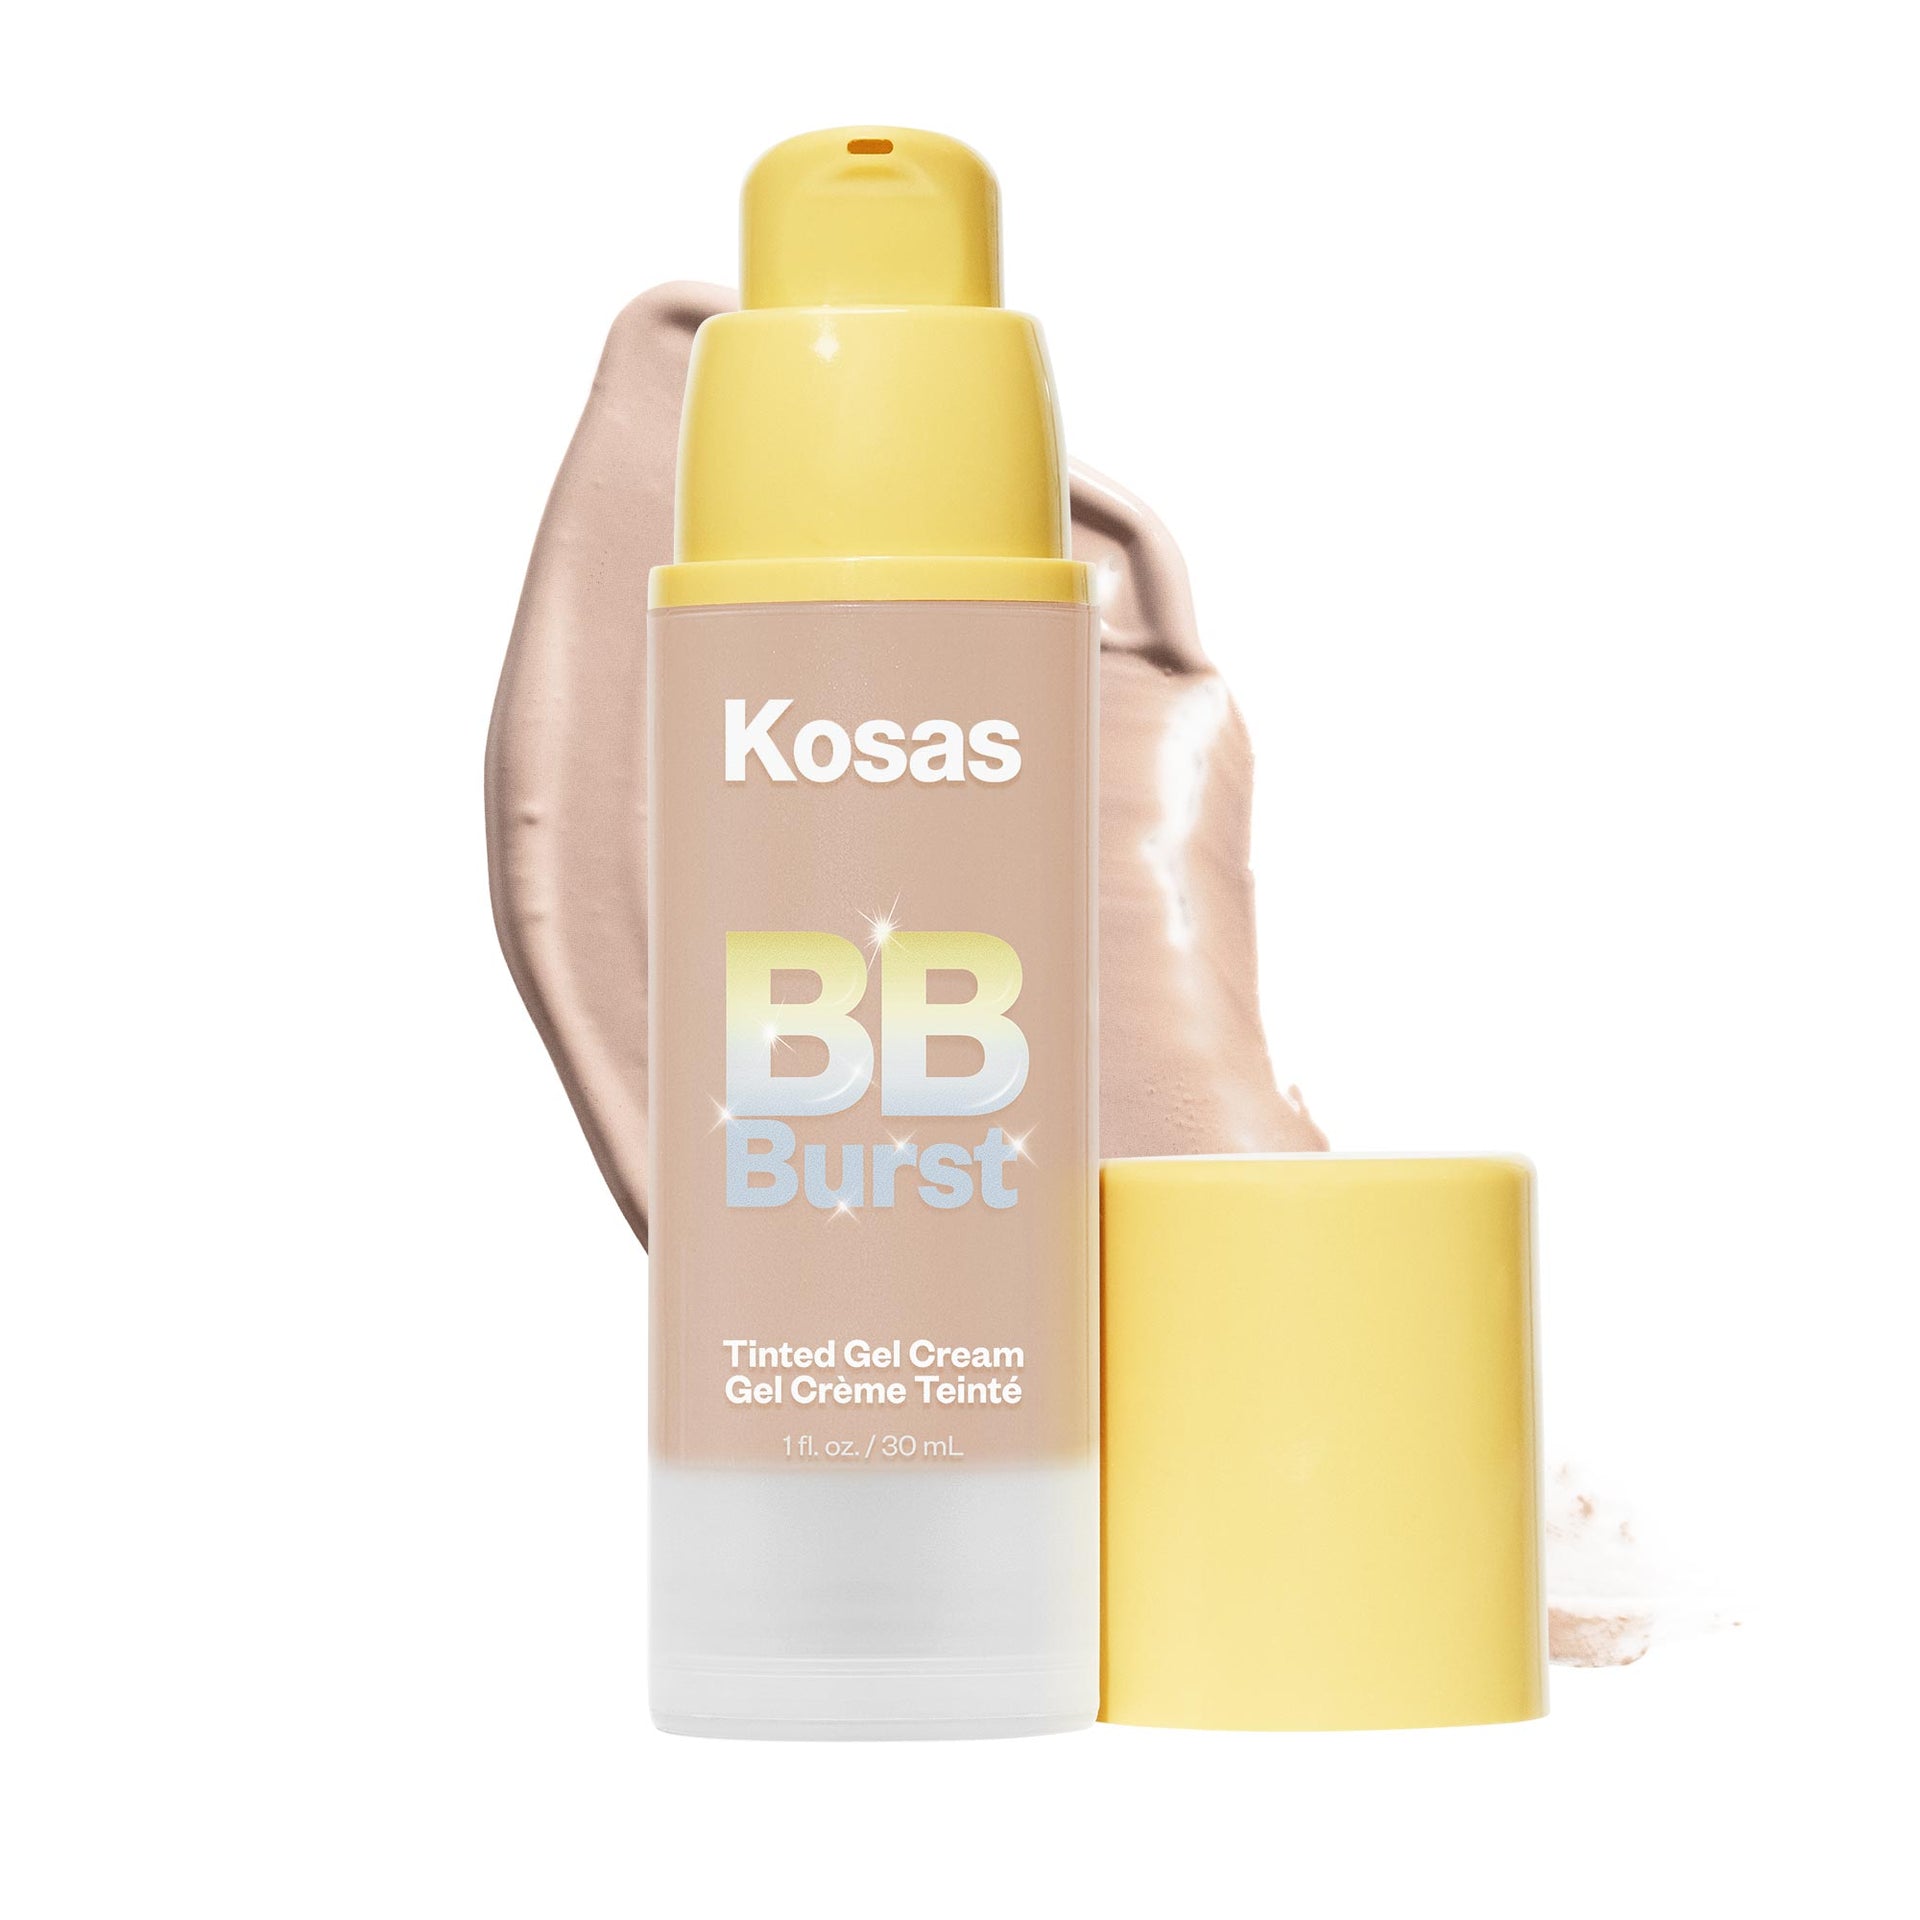 Kosas BB Burst in the shade Light Medium Neutral 21